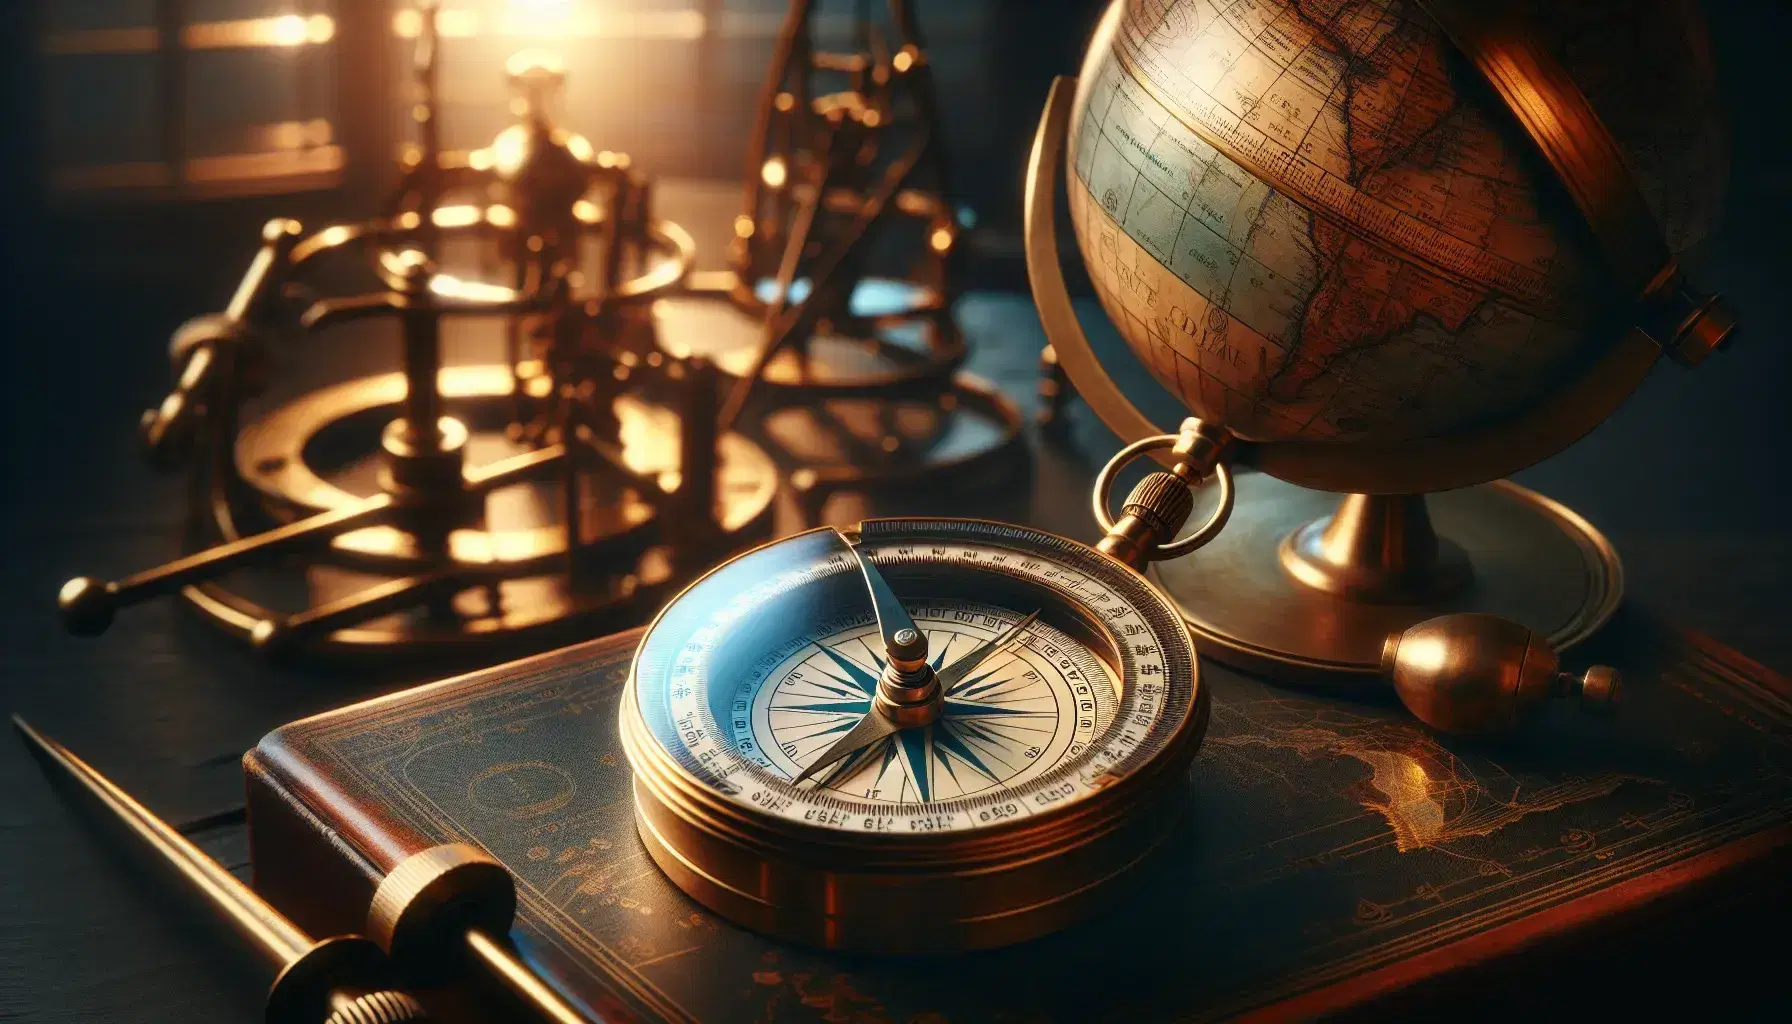 Bussola antica in ottone su superficie in legno scuro con ago magnetico puntato a nord, accanto a astrolabio e sestante, sfondo con globo terrestre.